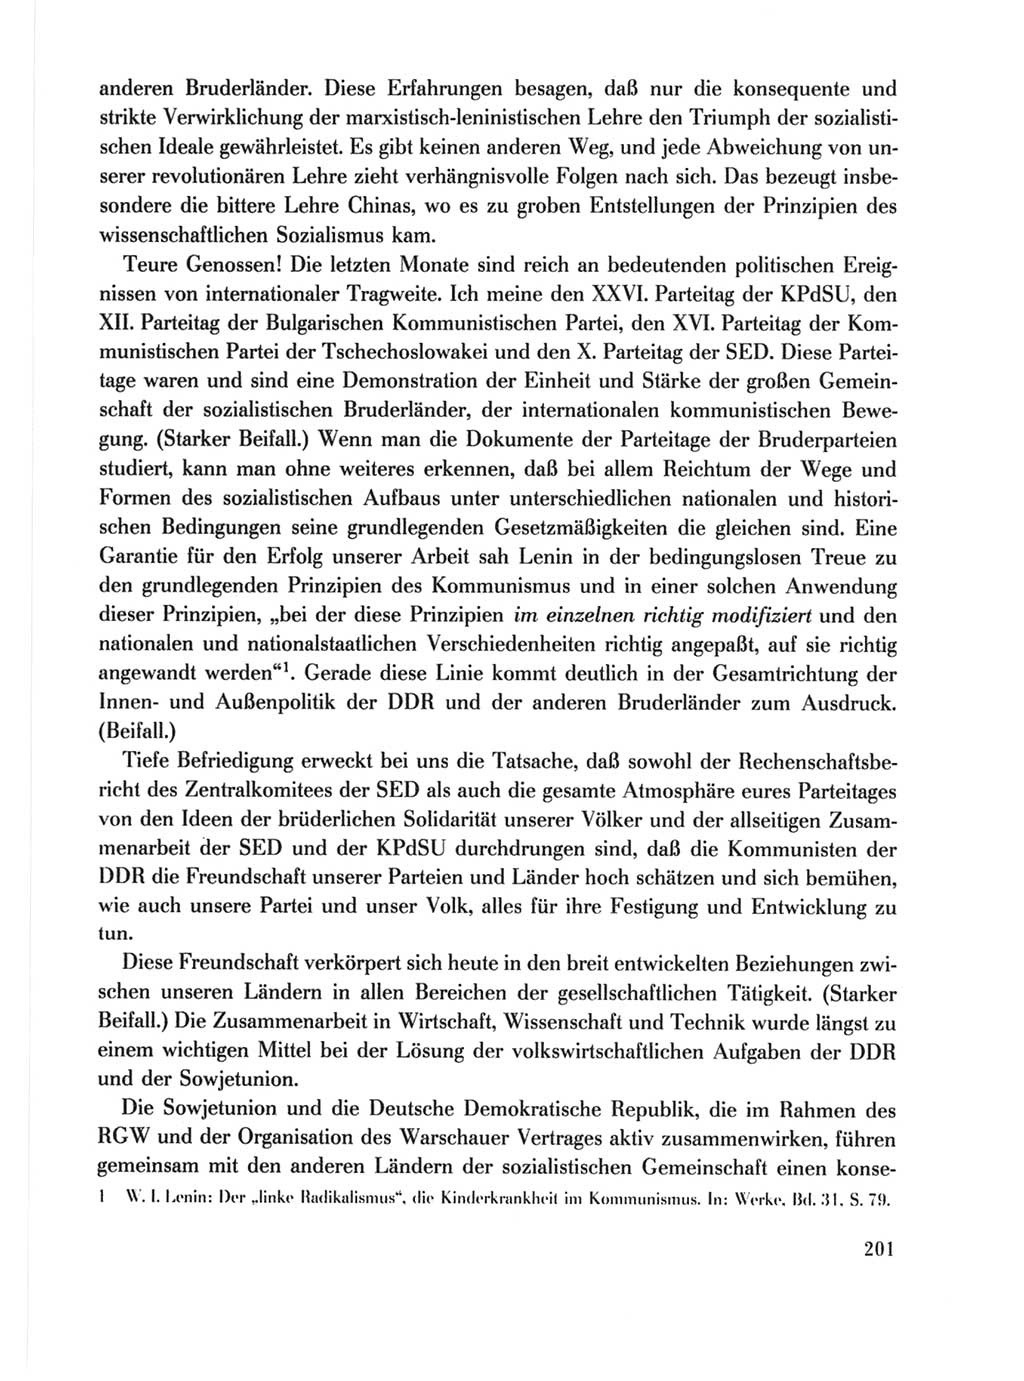 Protokoll der Verhandlungen des Ⅹ. Parteitages der Sozialistischen Einheitspartei Deutschlands (SED) [Deutsche Demokratische Republik (DDR)] 1981, Band 1, Seite 201 (Prot. Verh. Ⅹ. PT SED DDR 1981, Bd. 1, S. 201)